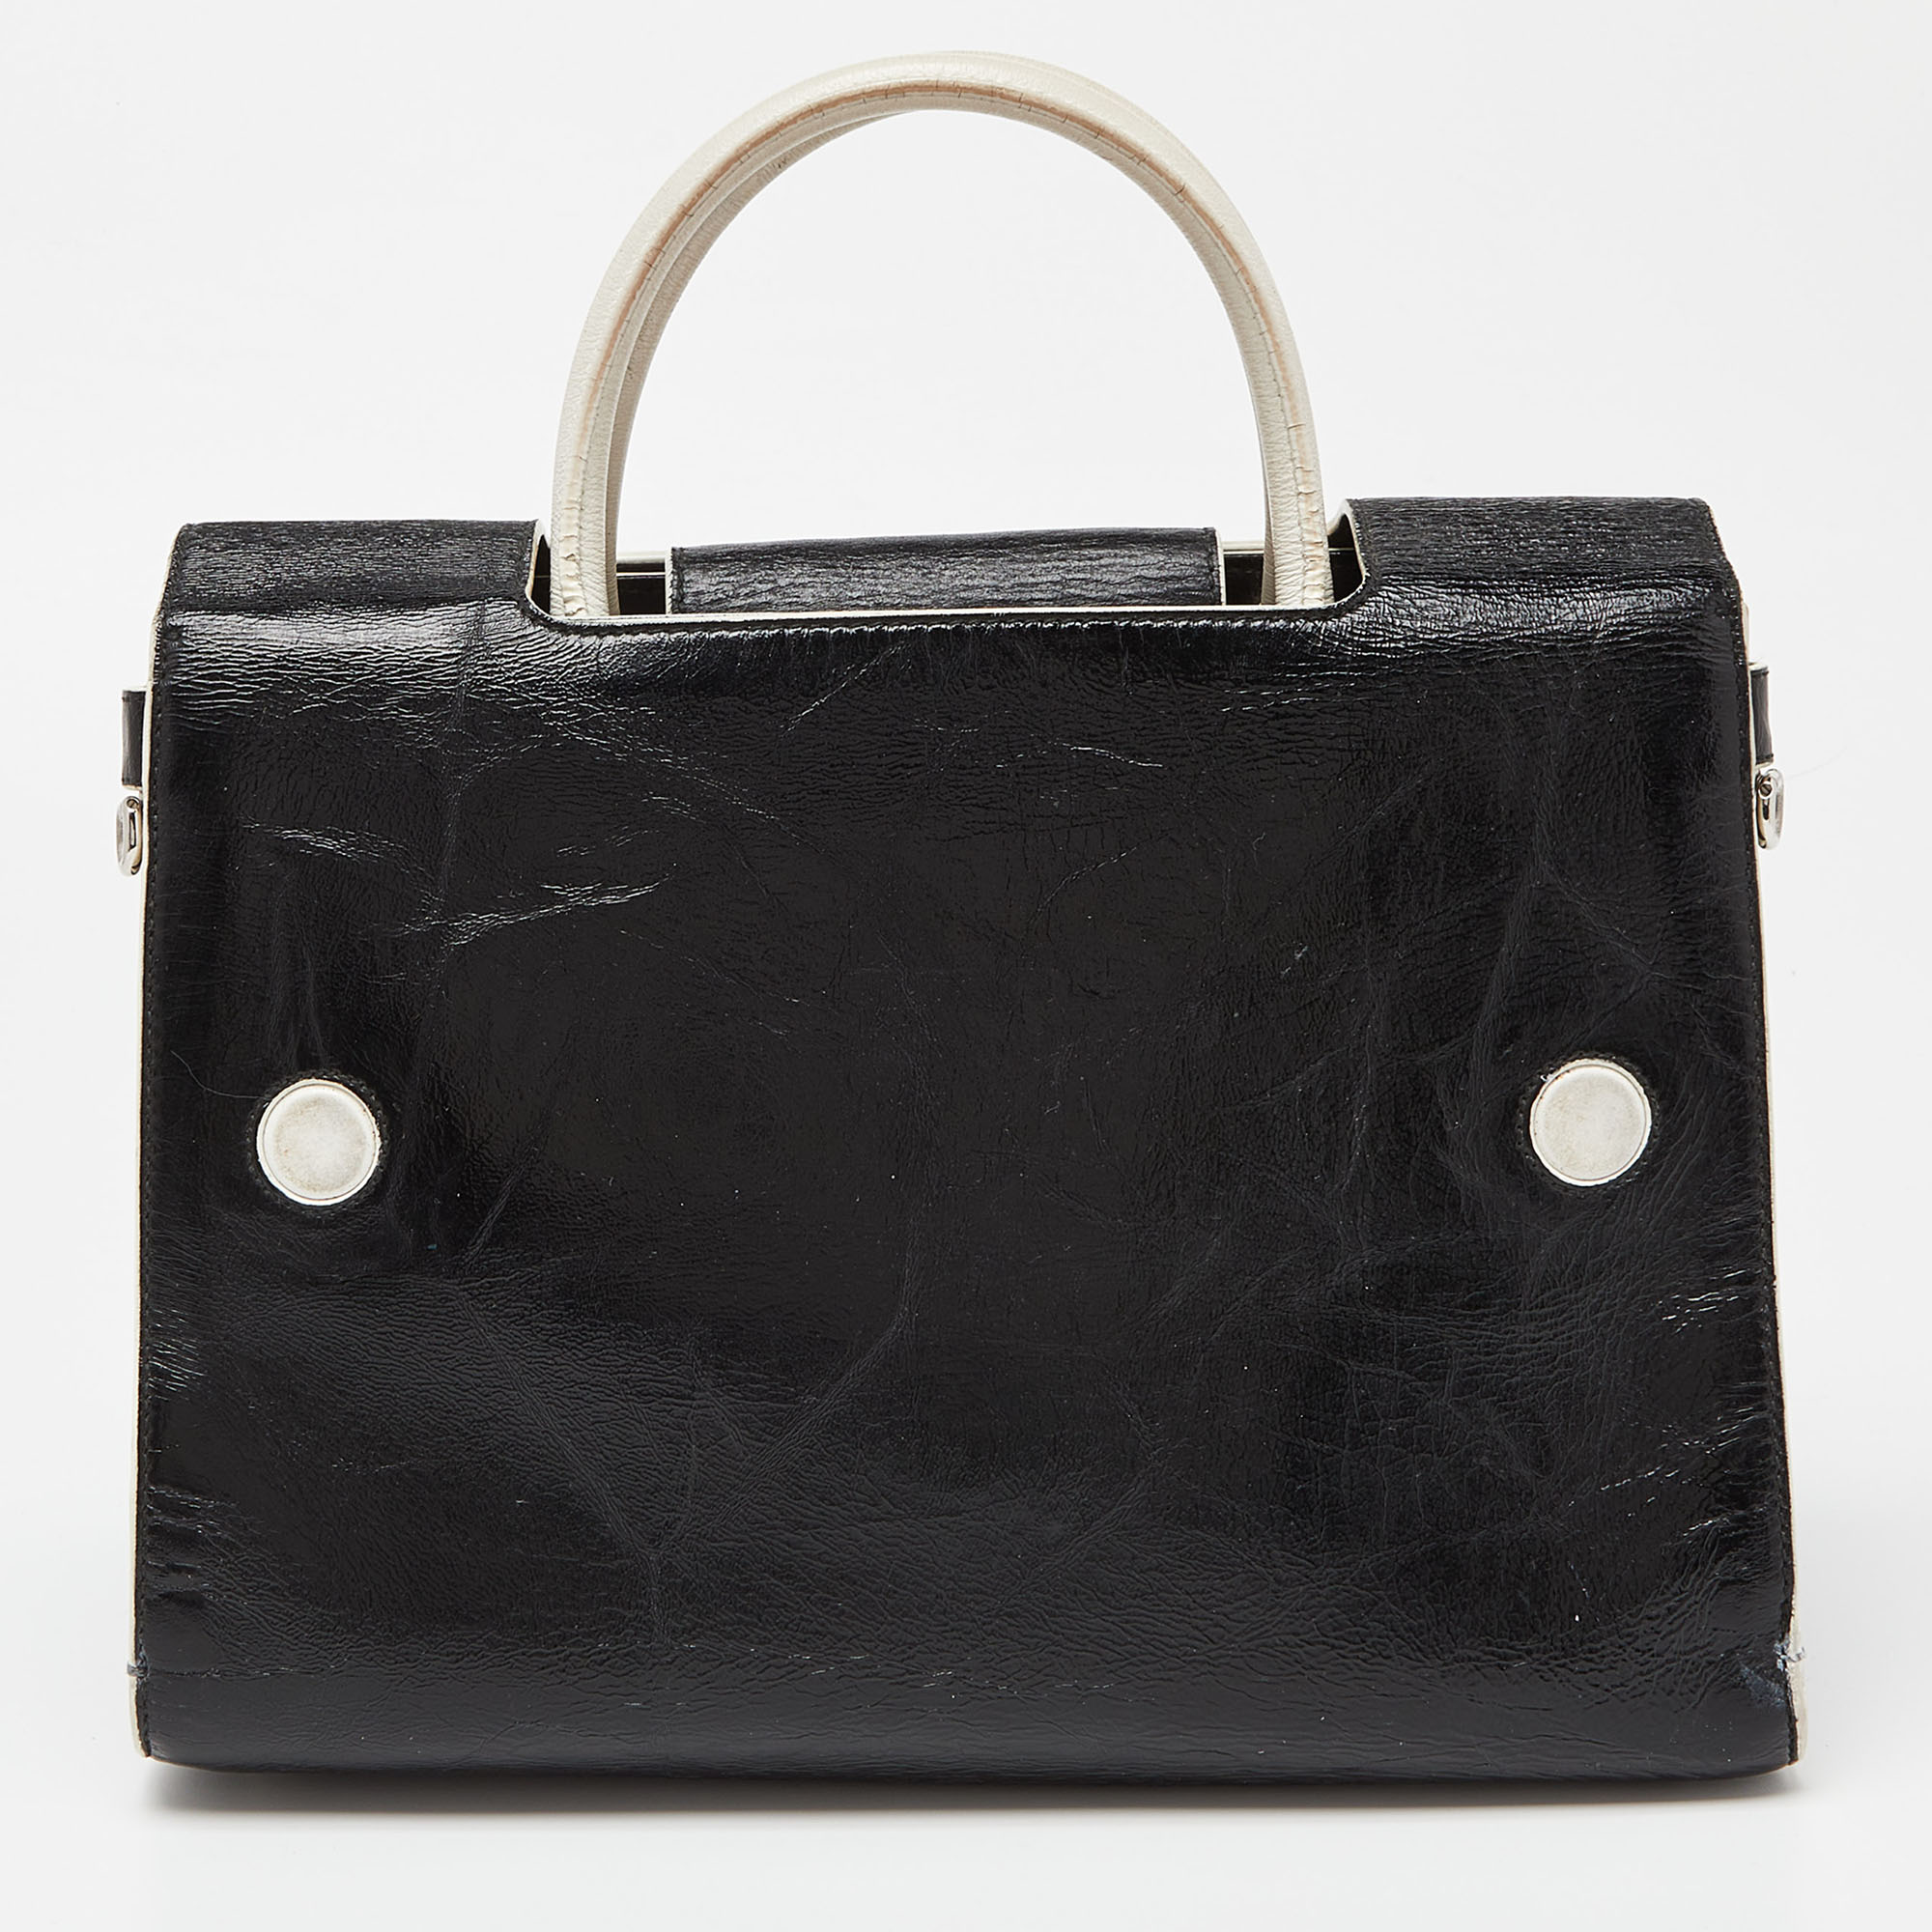 Dior Black/White Leather Medium Diorever Bag